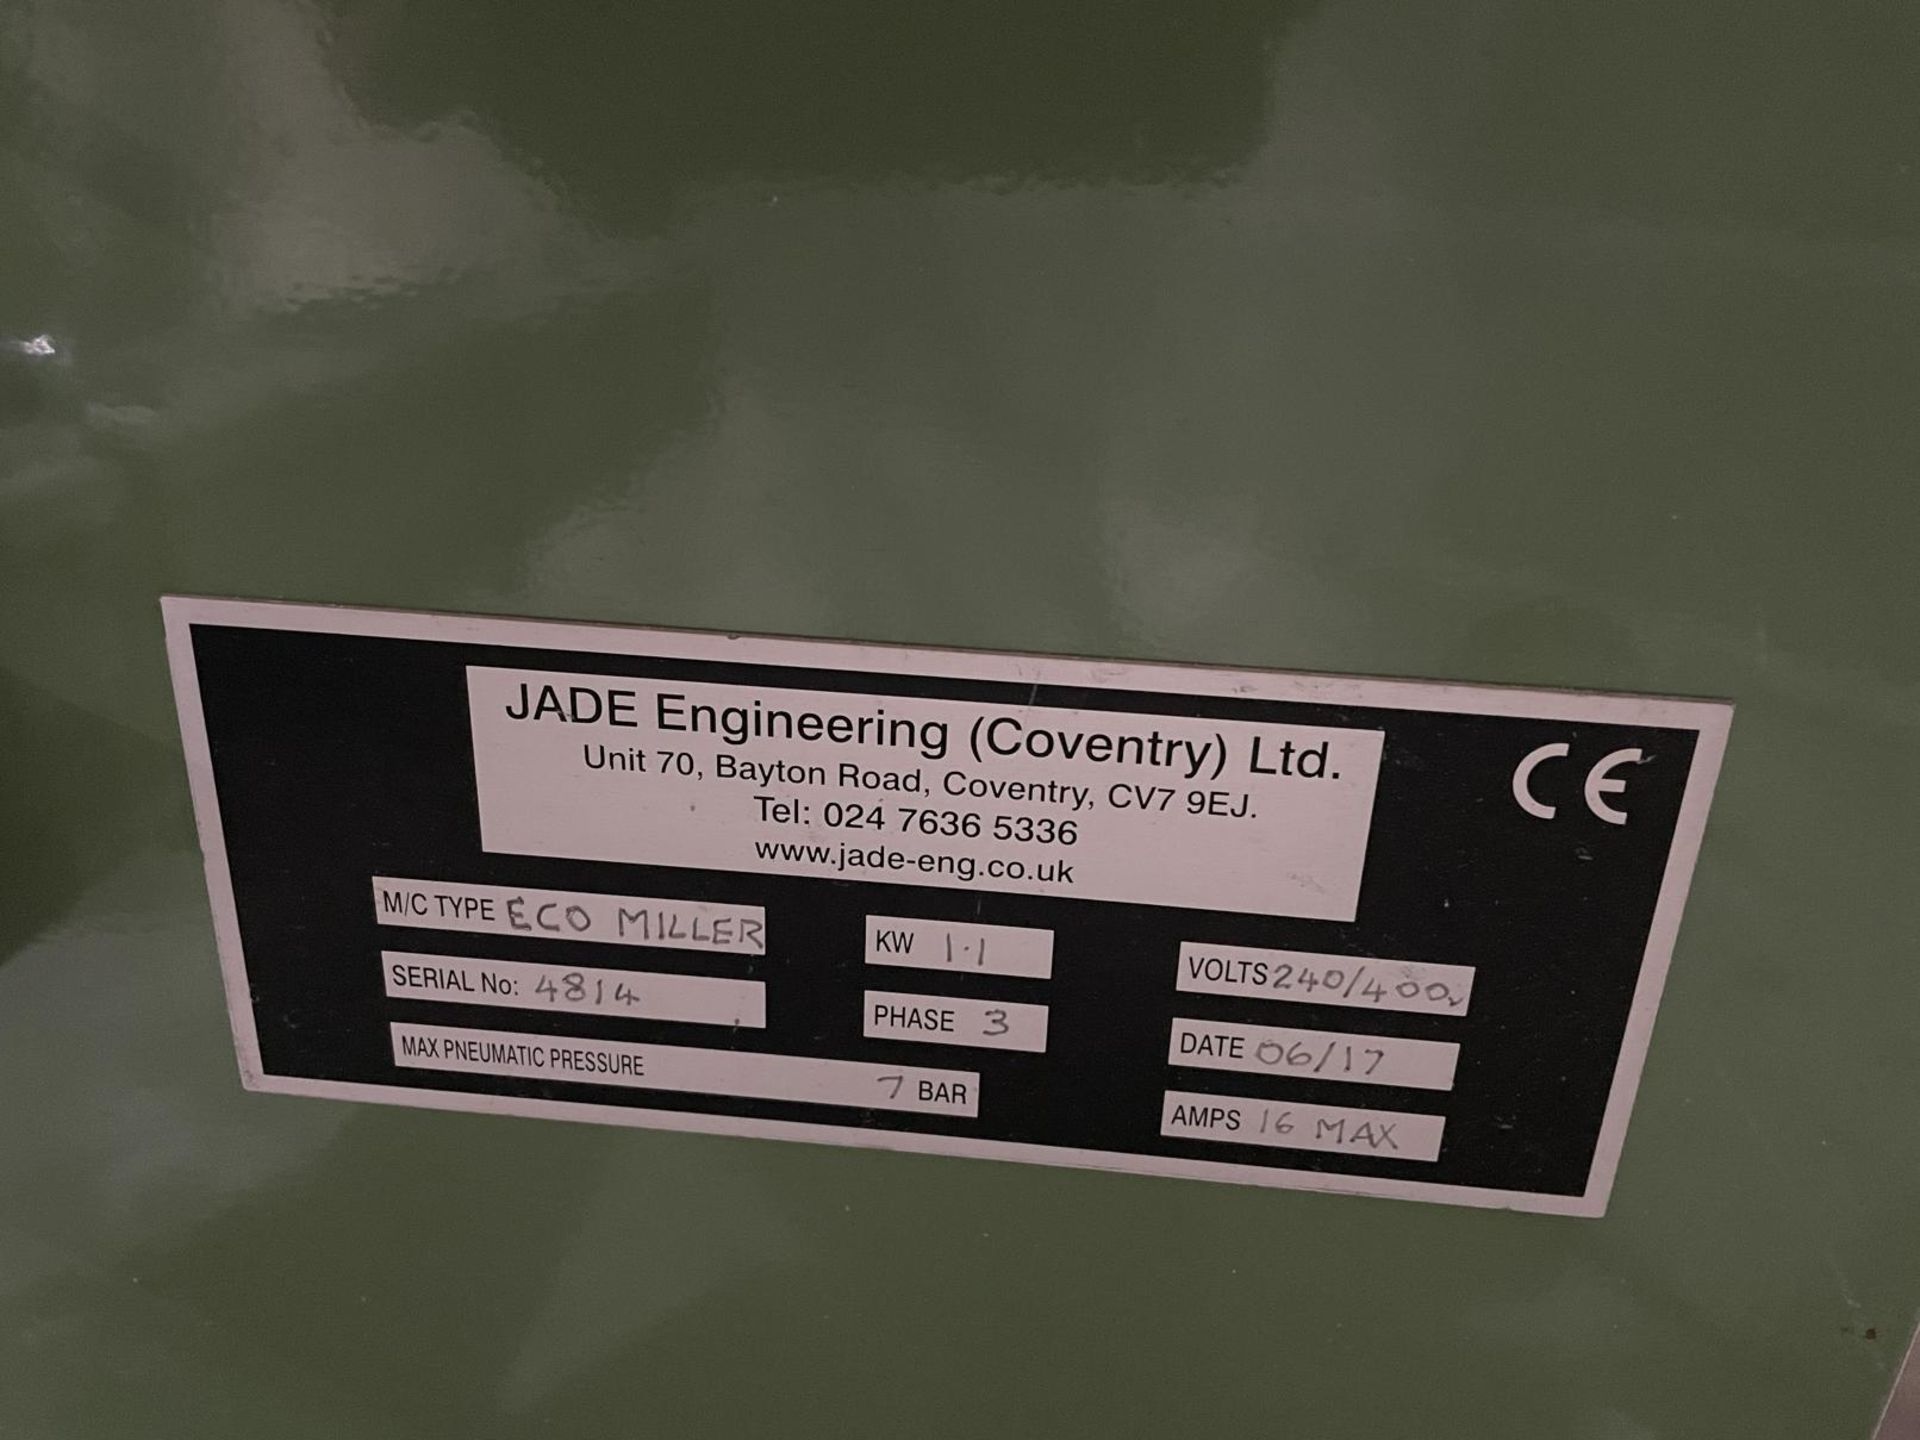 Jade Engineering Eco Miller Serial No. 4814 (2017) - Image 2 of 2